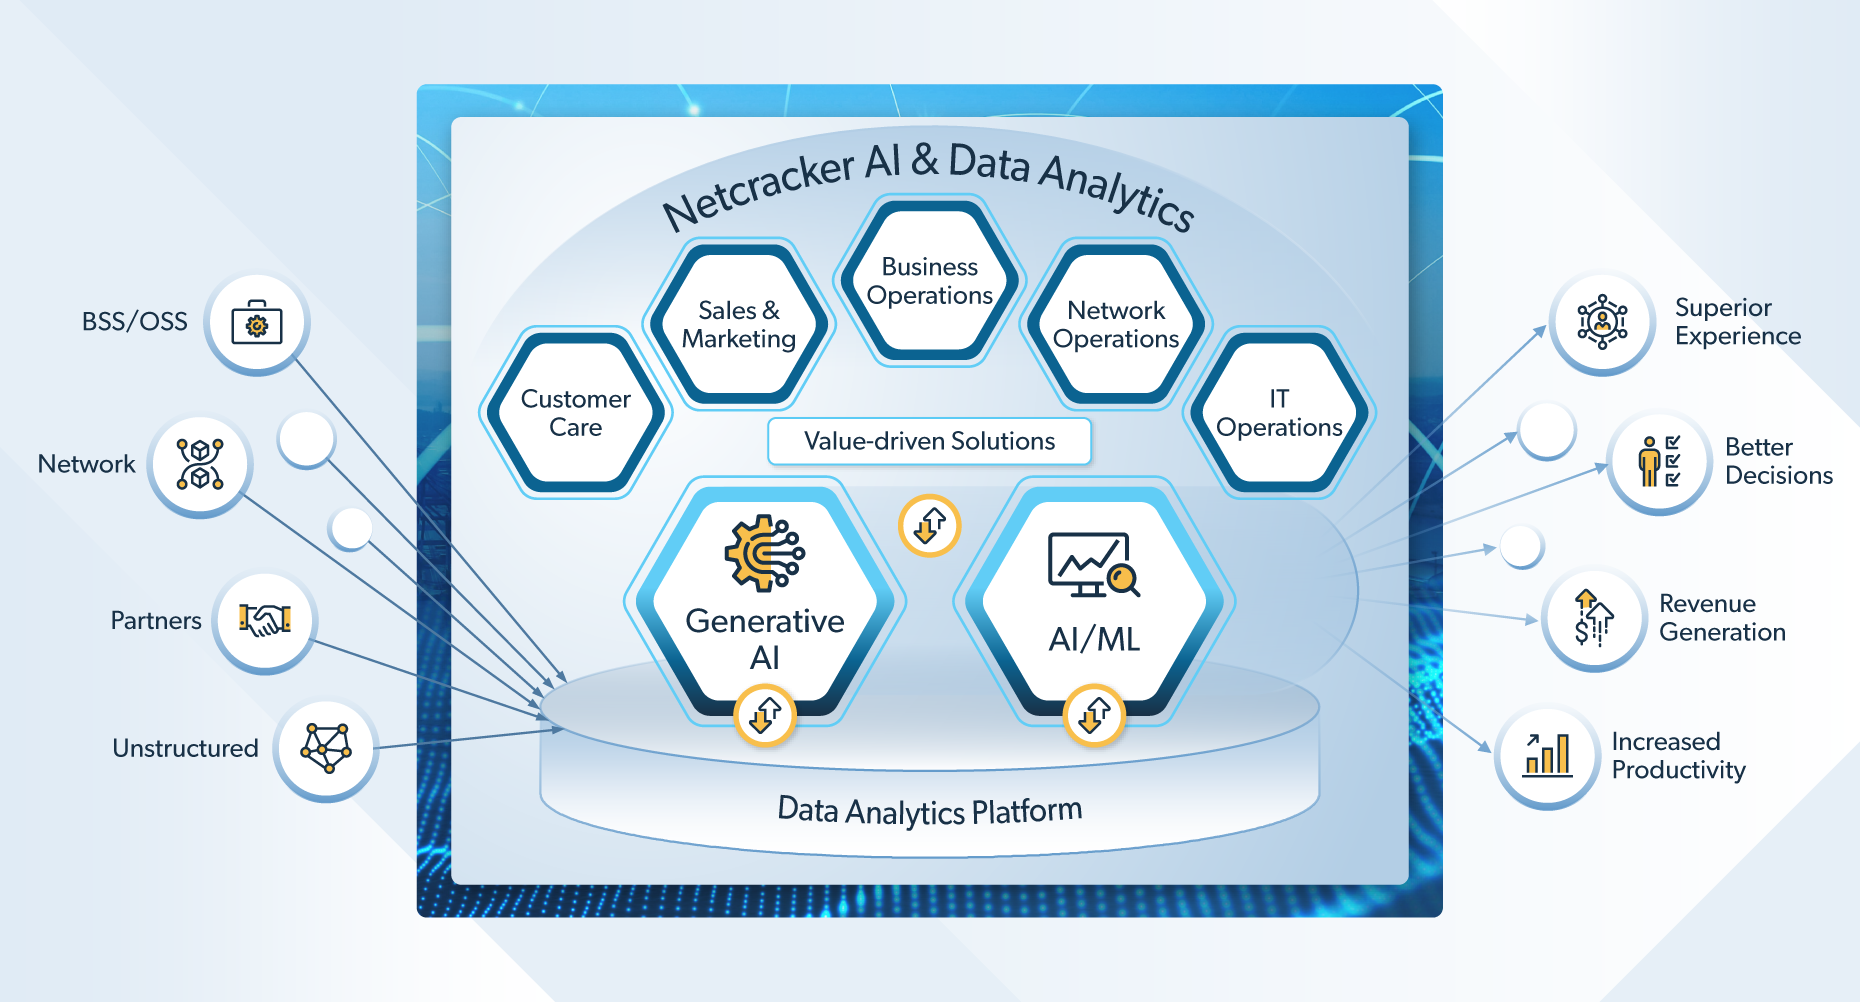 Netcracker AI & Data Analytics